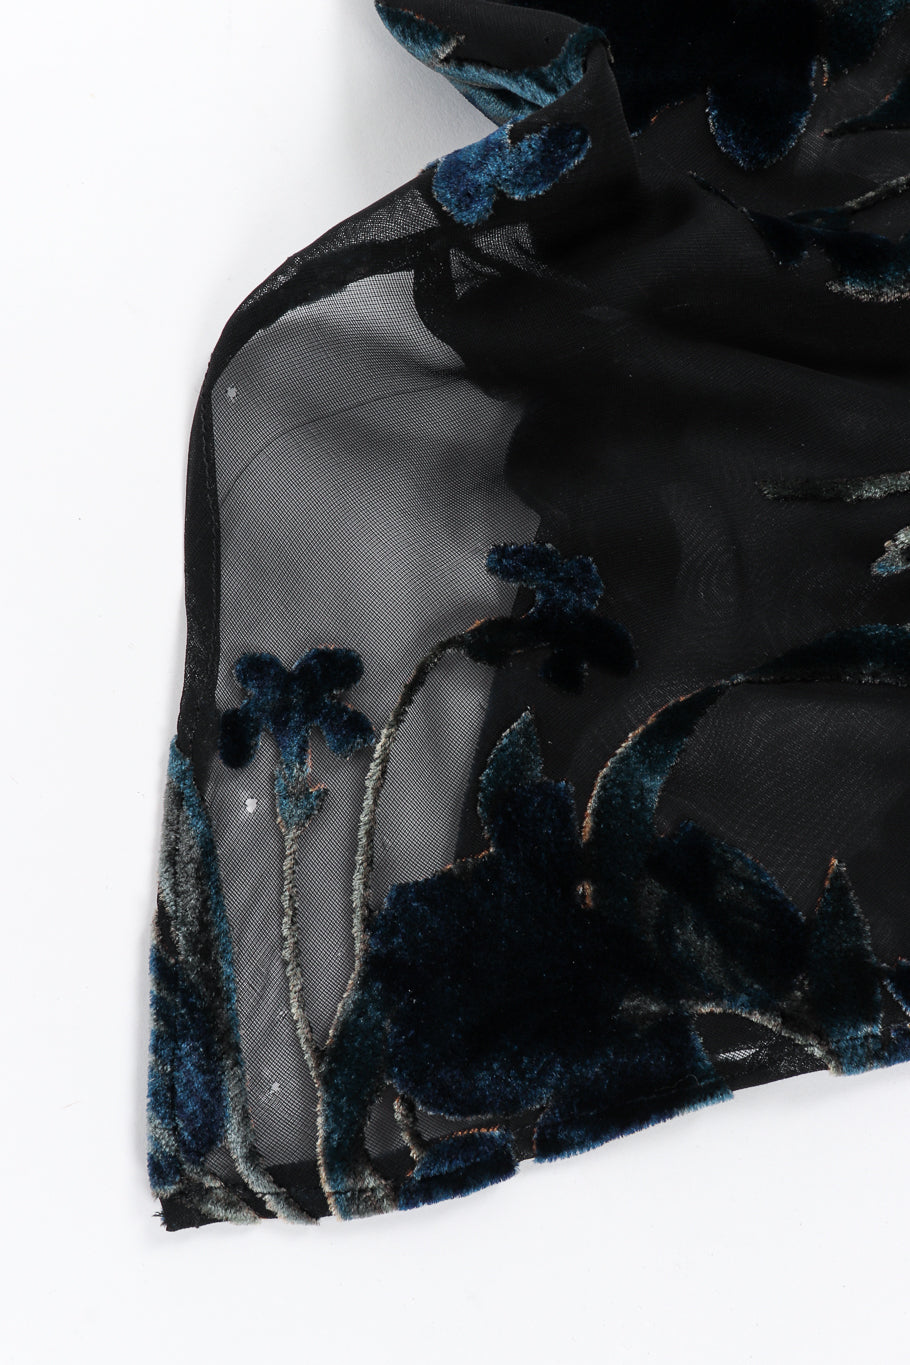 Velvet burnout slip dress by Richard Tyler small holes @recessla